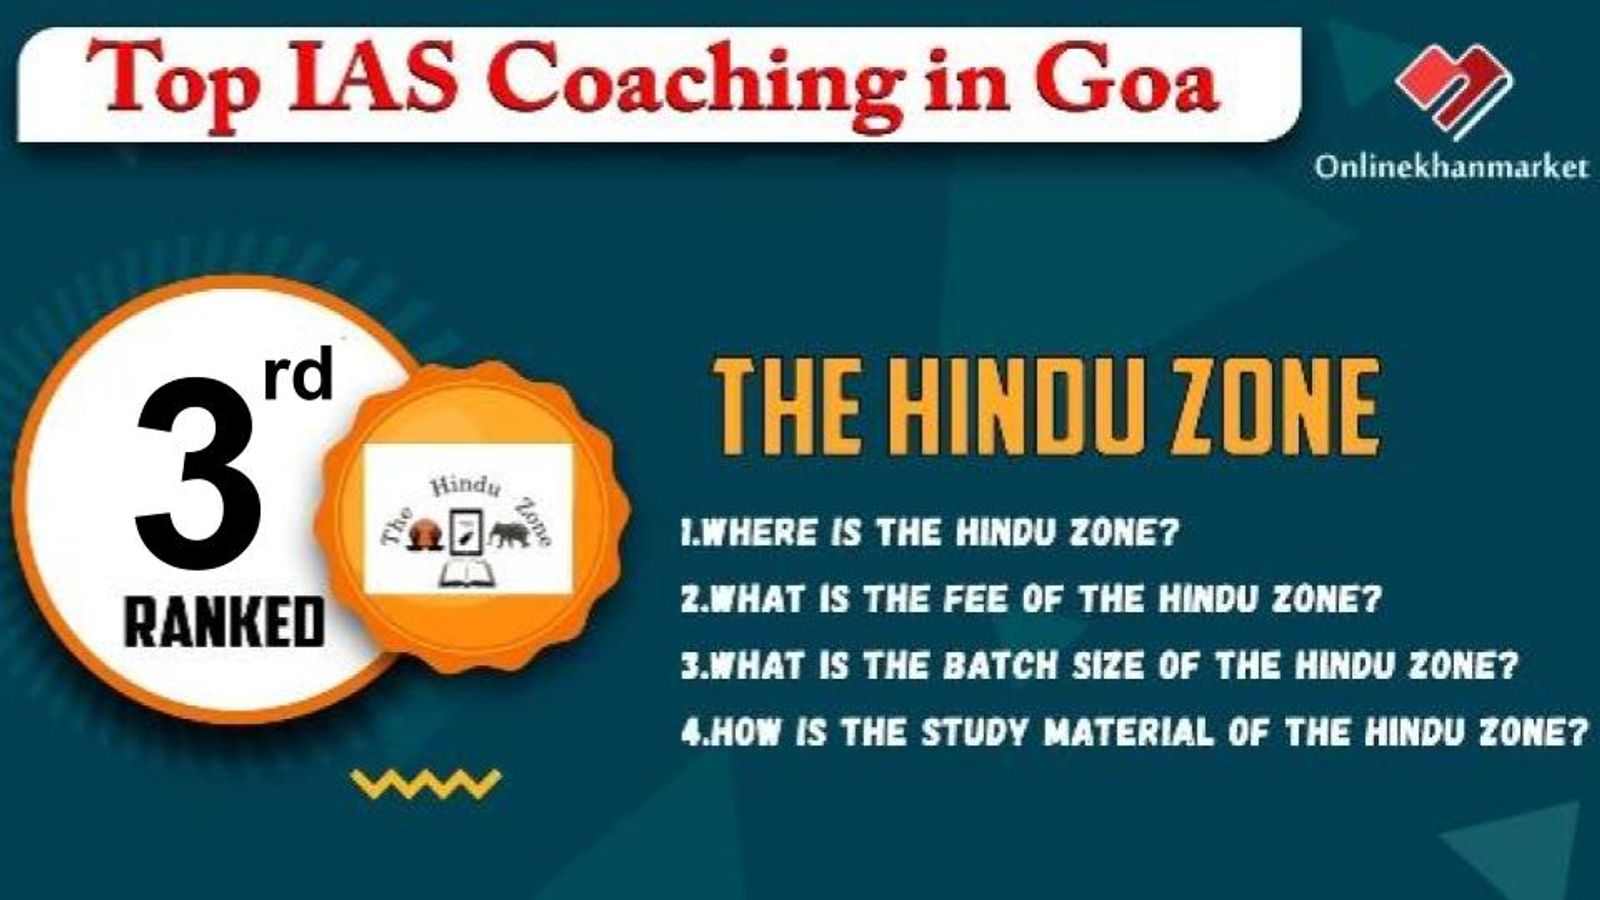 Top IAS Coaching in Goa